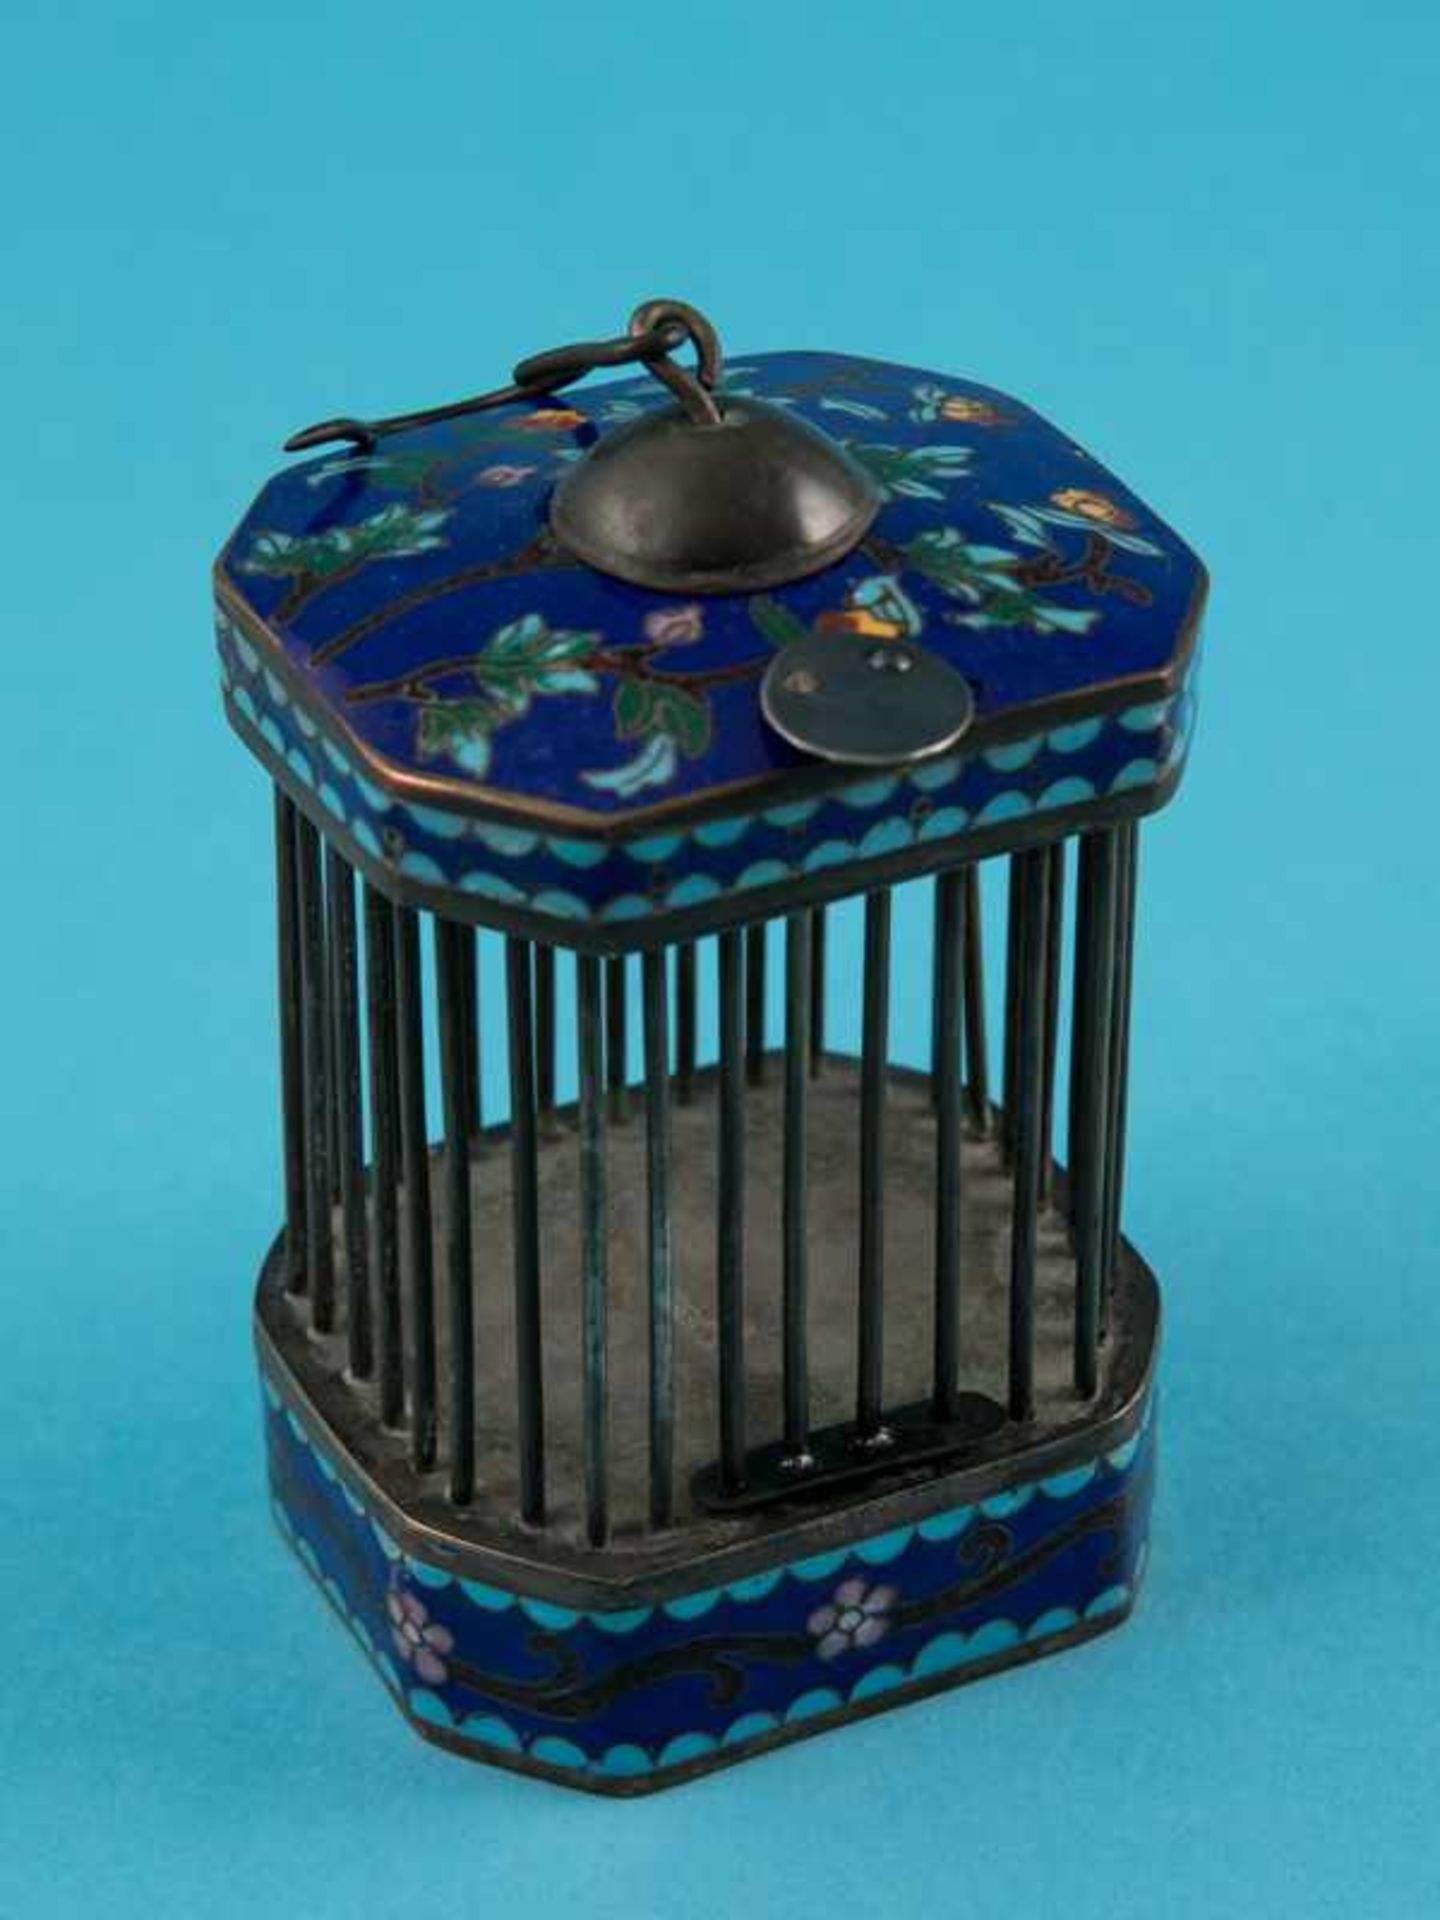 Grillenkäfig mit Cloisonnédekor, China, um 1900. Messing/Kupfer mit farbigem Emaille-Cloisonné-